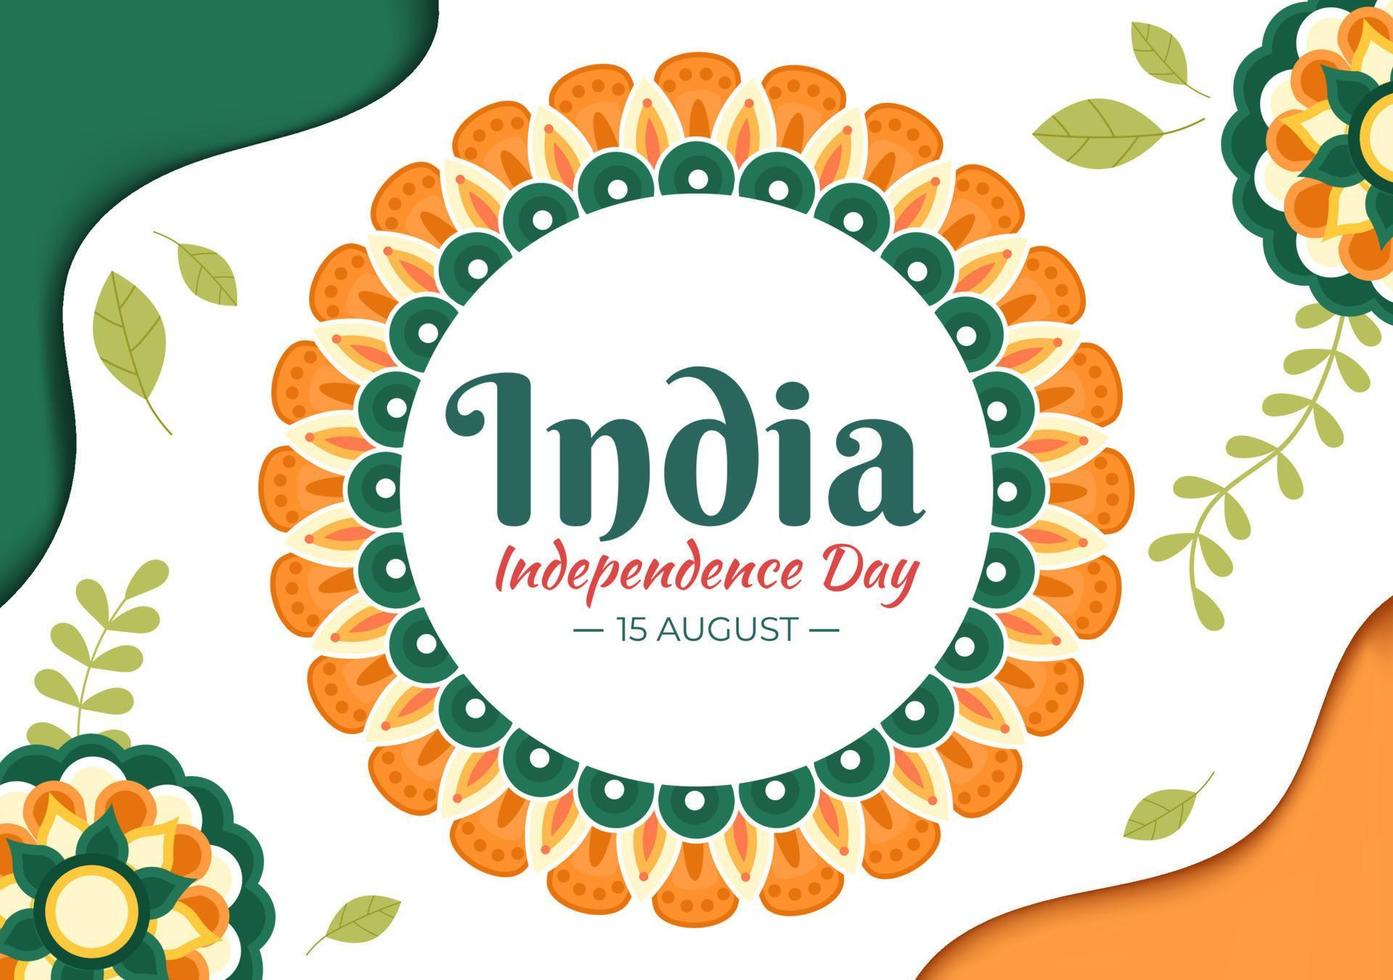 gelukkige indische onafhankelijkheidsdag die elk jaar in augustus wordt gevierd met vlaggen, mensenkarakter en ashoka-wielen in de cartoonstijlillustratie vector